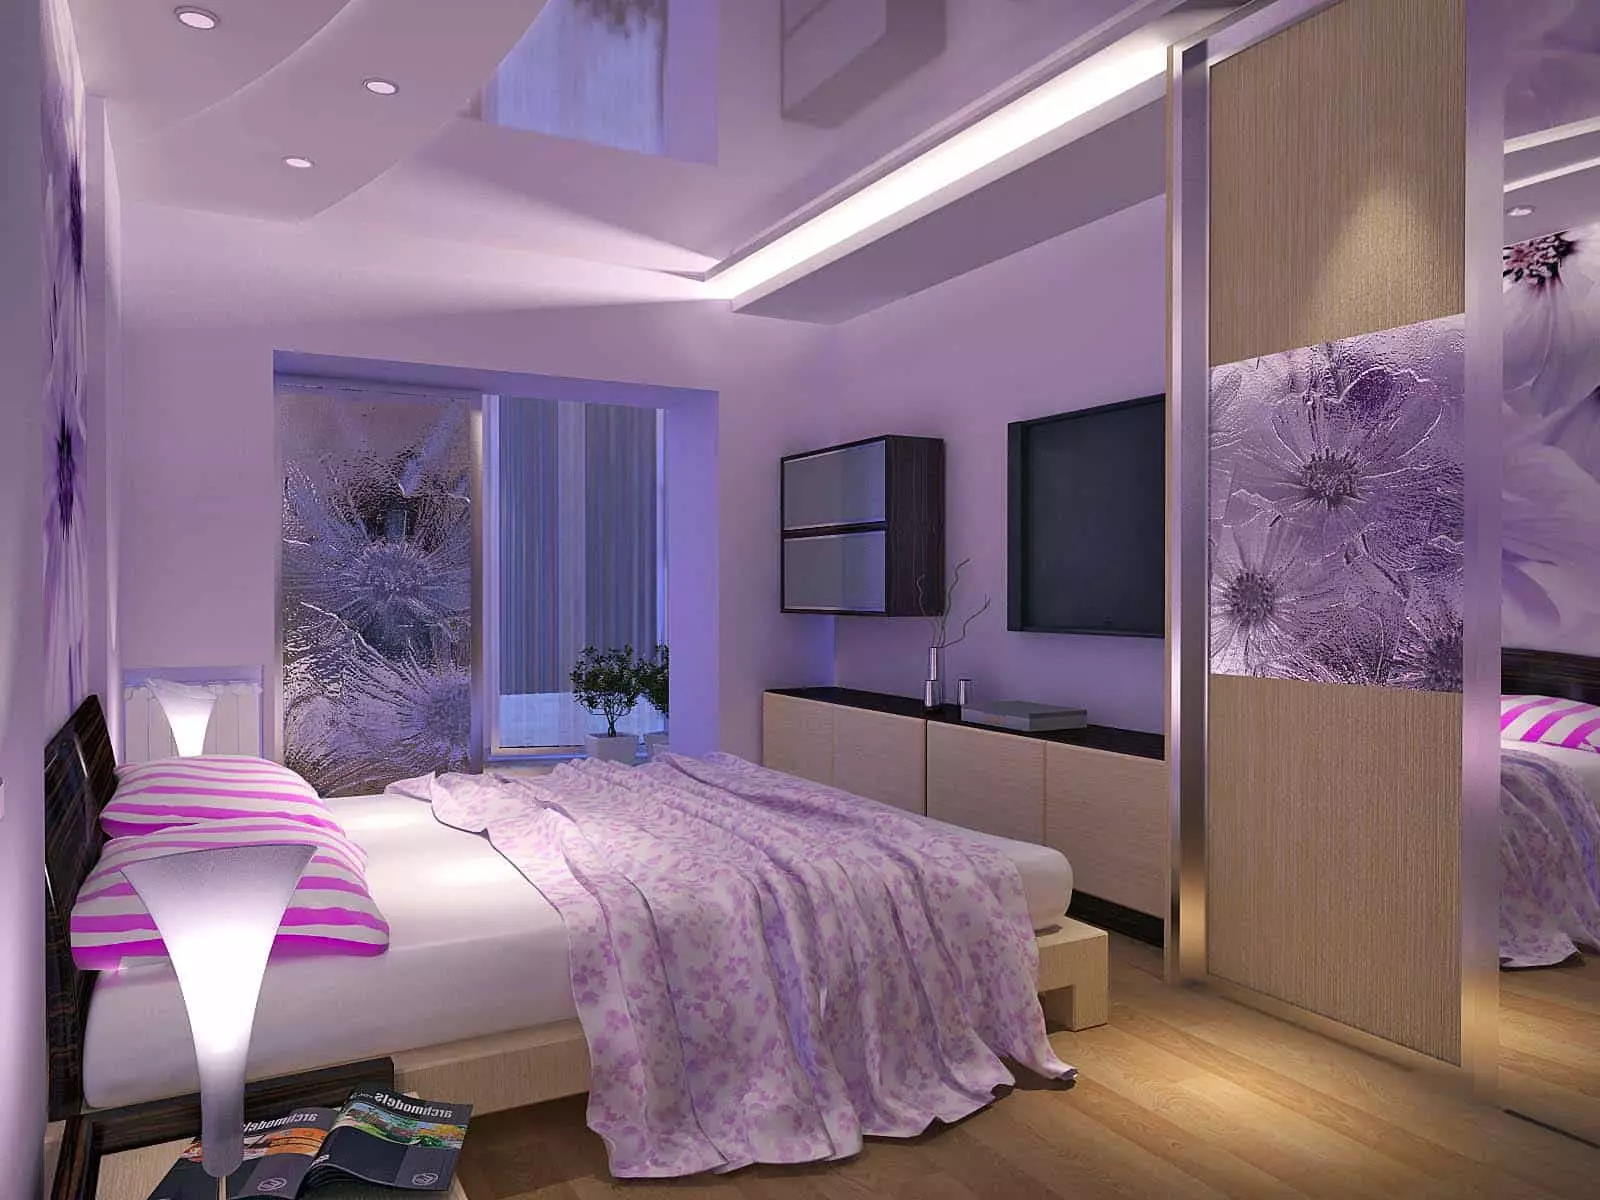 Violetinis miegamasis (93 nuotraukos): fono paveikslėliai interjero dizainas, kambarys pilka-violetinė ir alyva, violetinė balta ir tamsiai violetiniai tonai. Kokios kitos spalvos yra violetinės? 9854_68